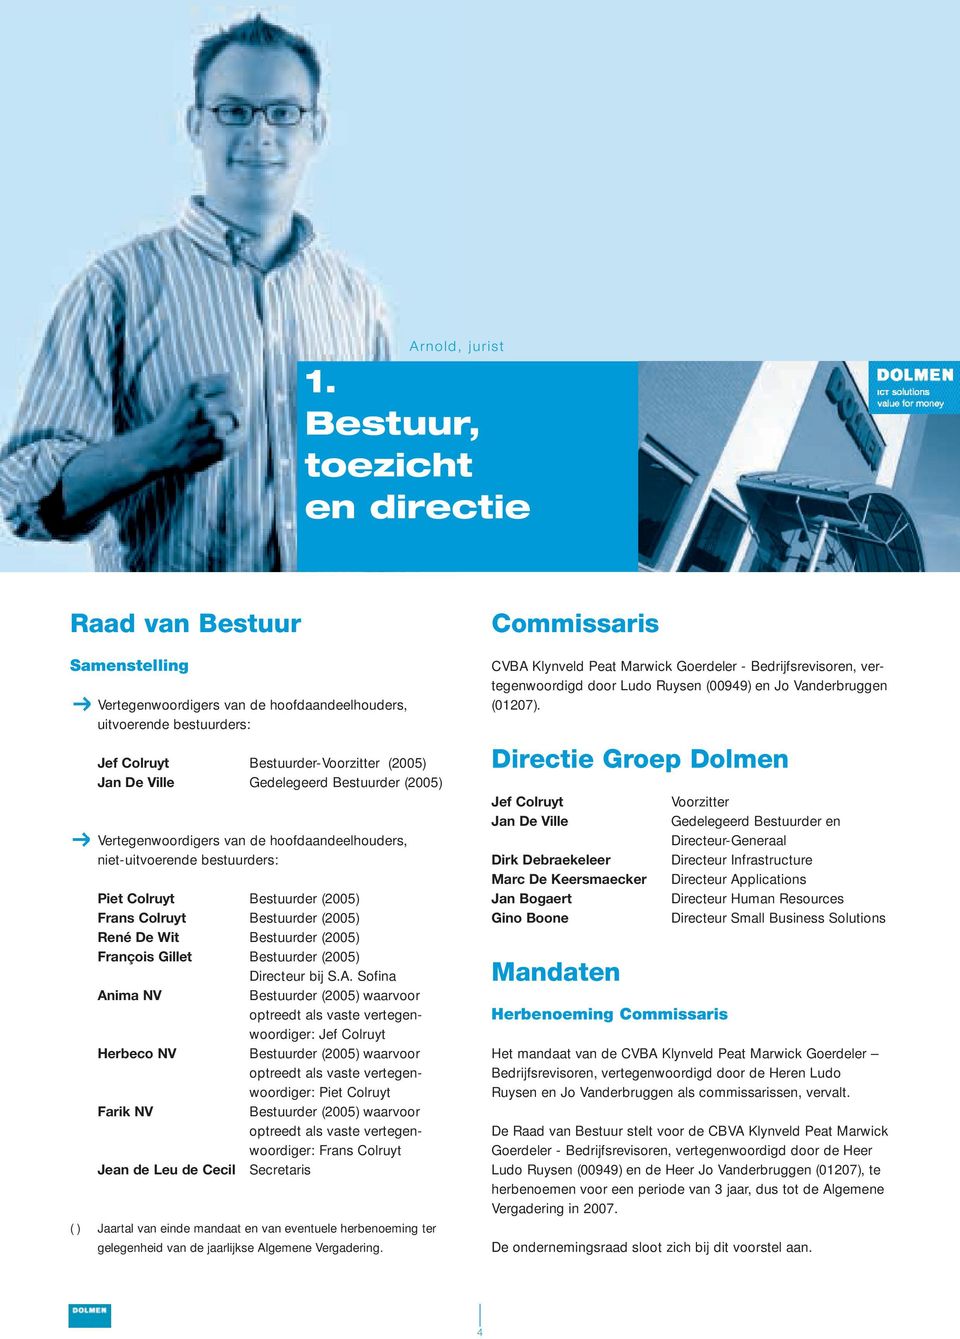 Bestuurder (2005) Vertegenwoordigers van de hoofdaandeelhouders, niet-uitvoerende bestuurders: Piet Colruyt Bestuurder (2005) Frans Colruyt Bestuurder (2005) René De Wit Bestuurder (2005) François